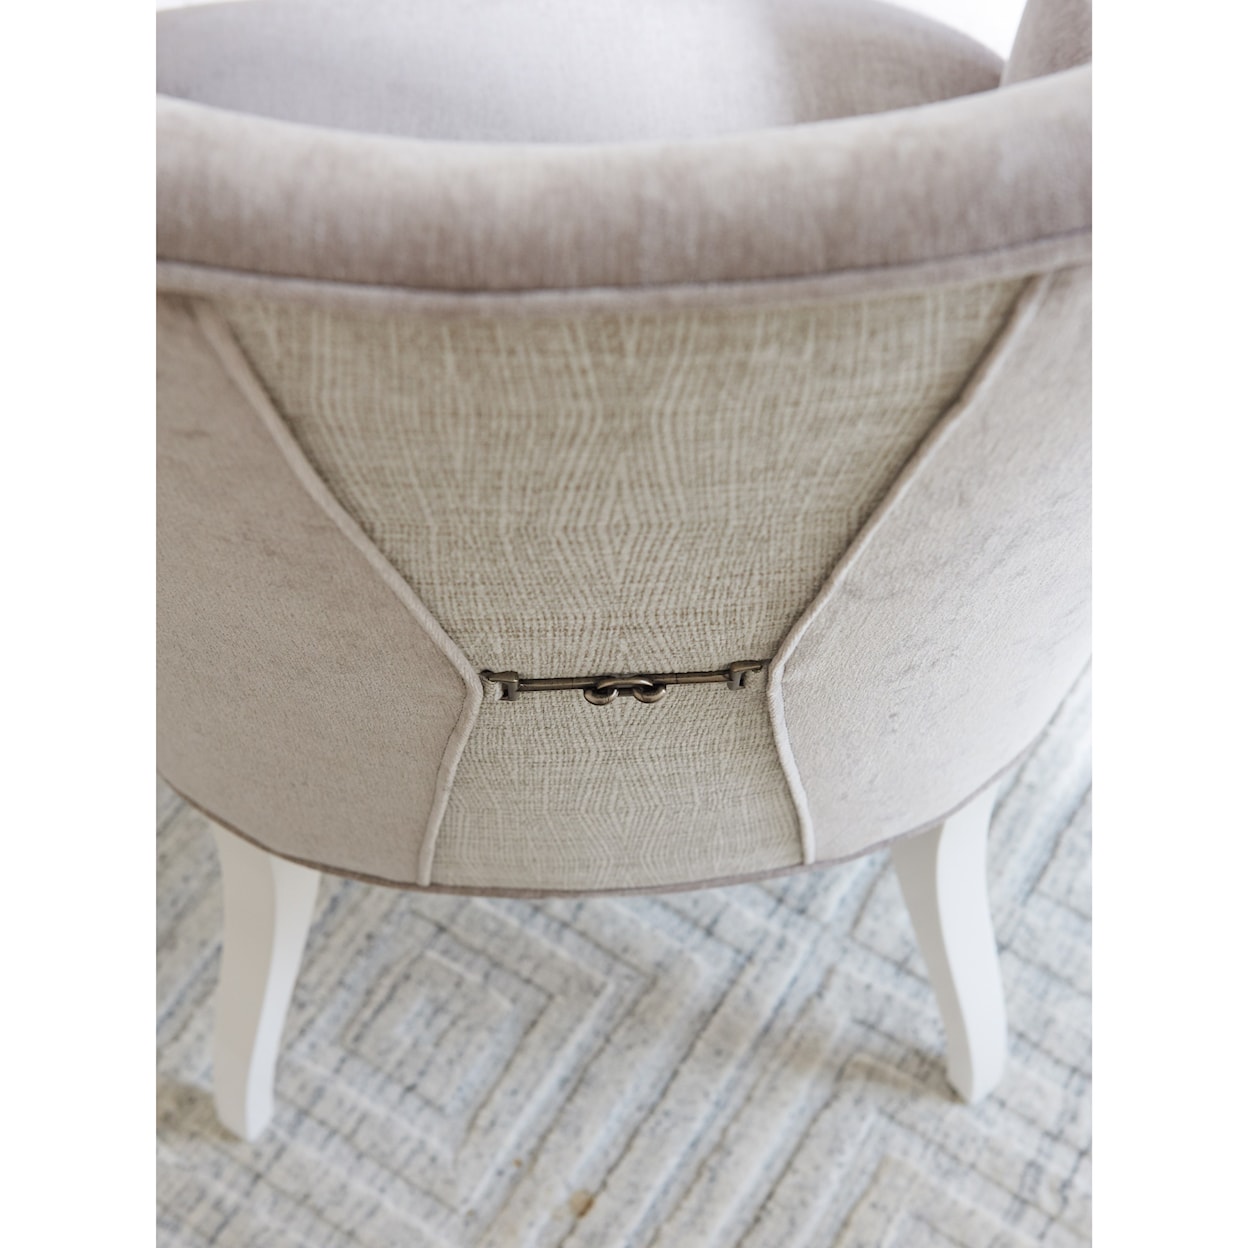 Lexington Avondale Geneva Upholstered Side Chair - Custom